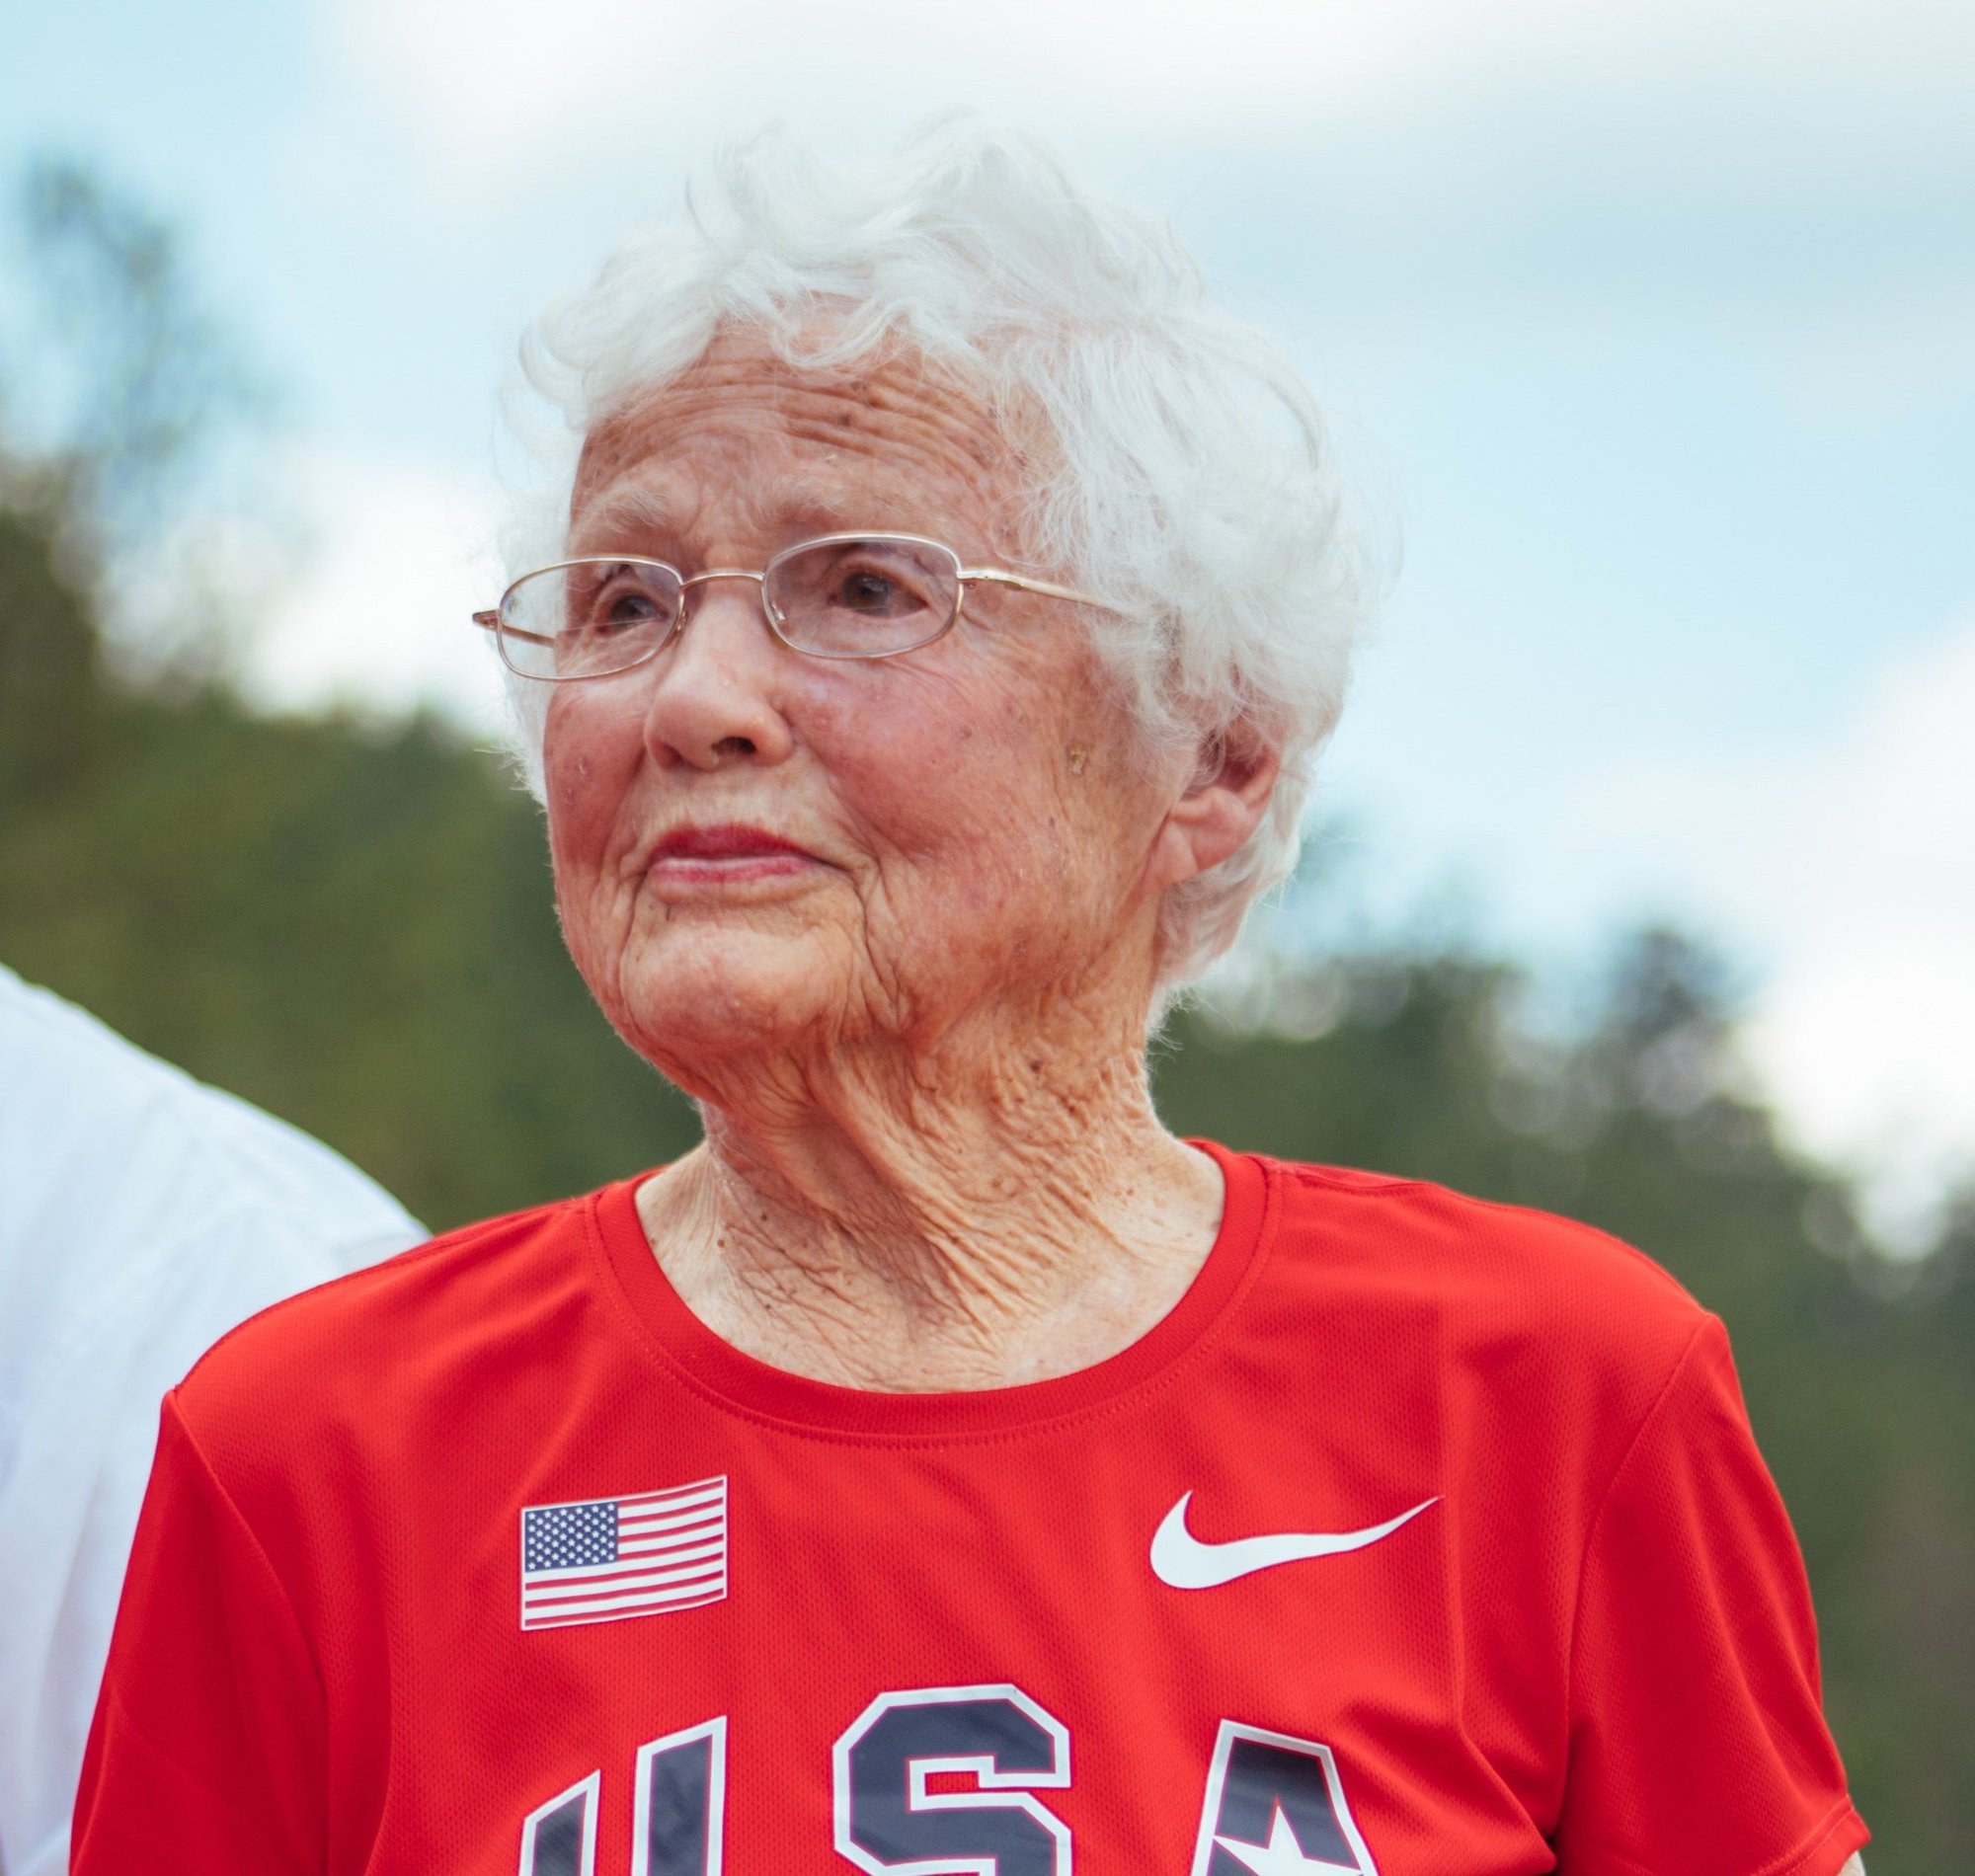 Kỷ lục thế giới mới: Một người phụ nữ 82 tuổi có thể chạy 125 km trong vòng 24 giờ! - Ảnh 3.